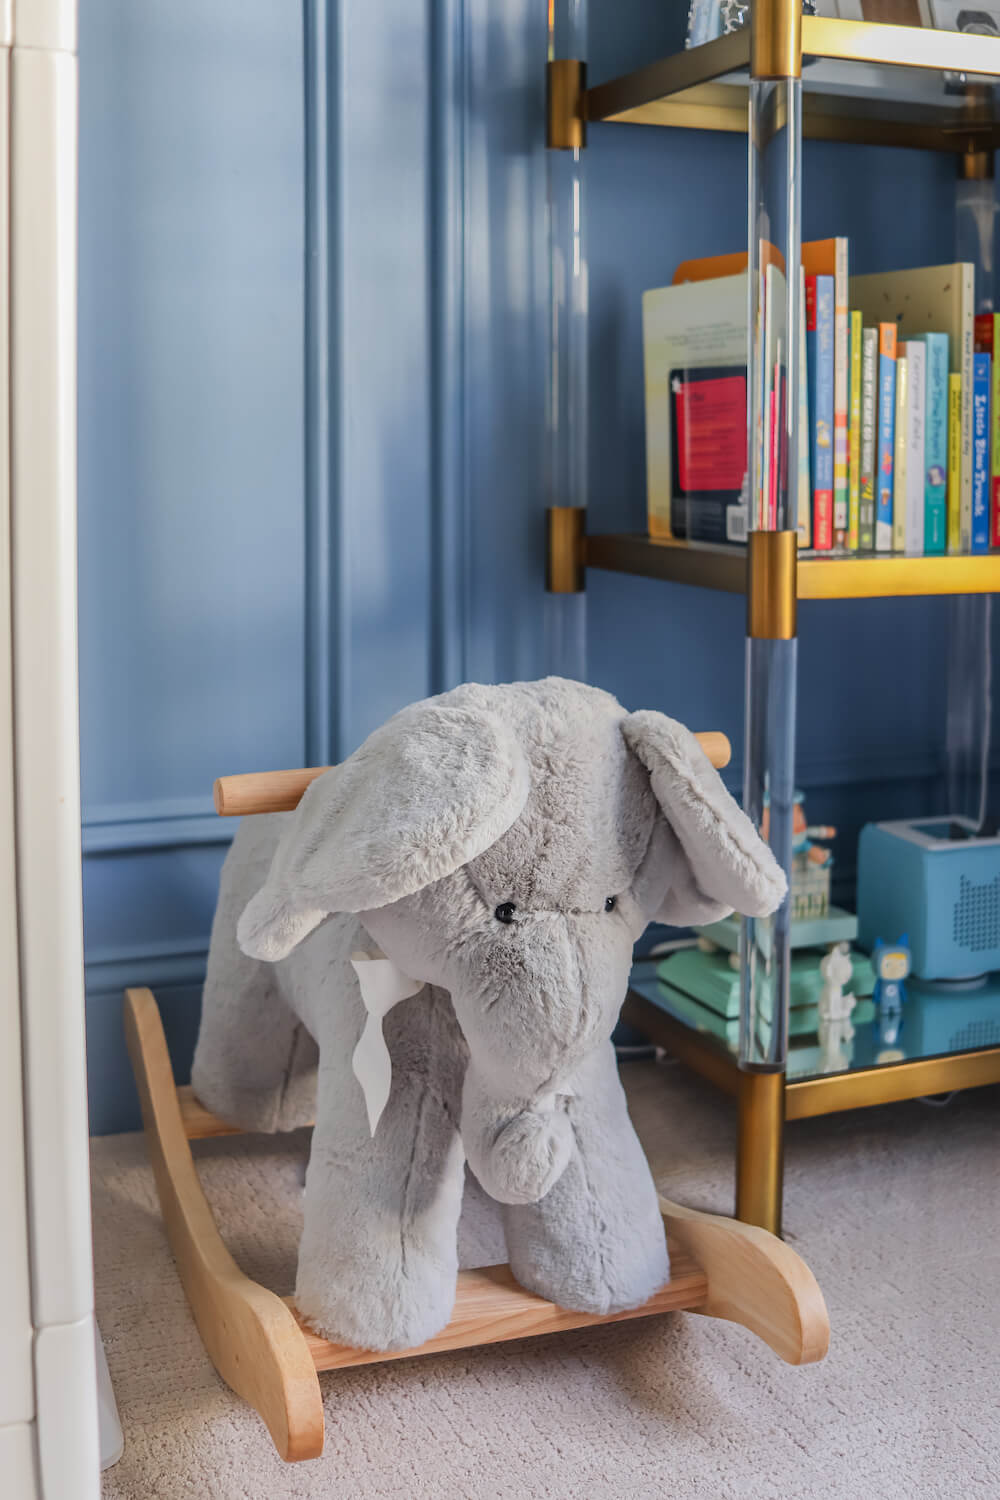 plush elephant rocker toy in nursery